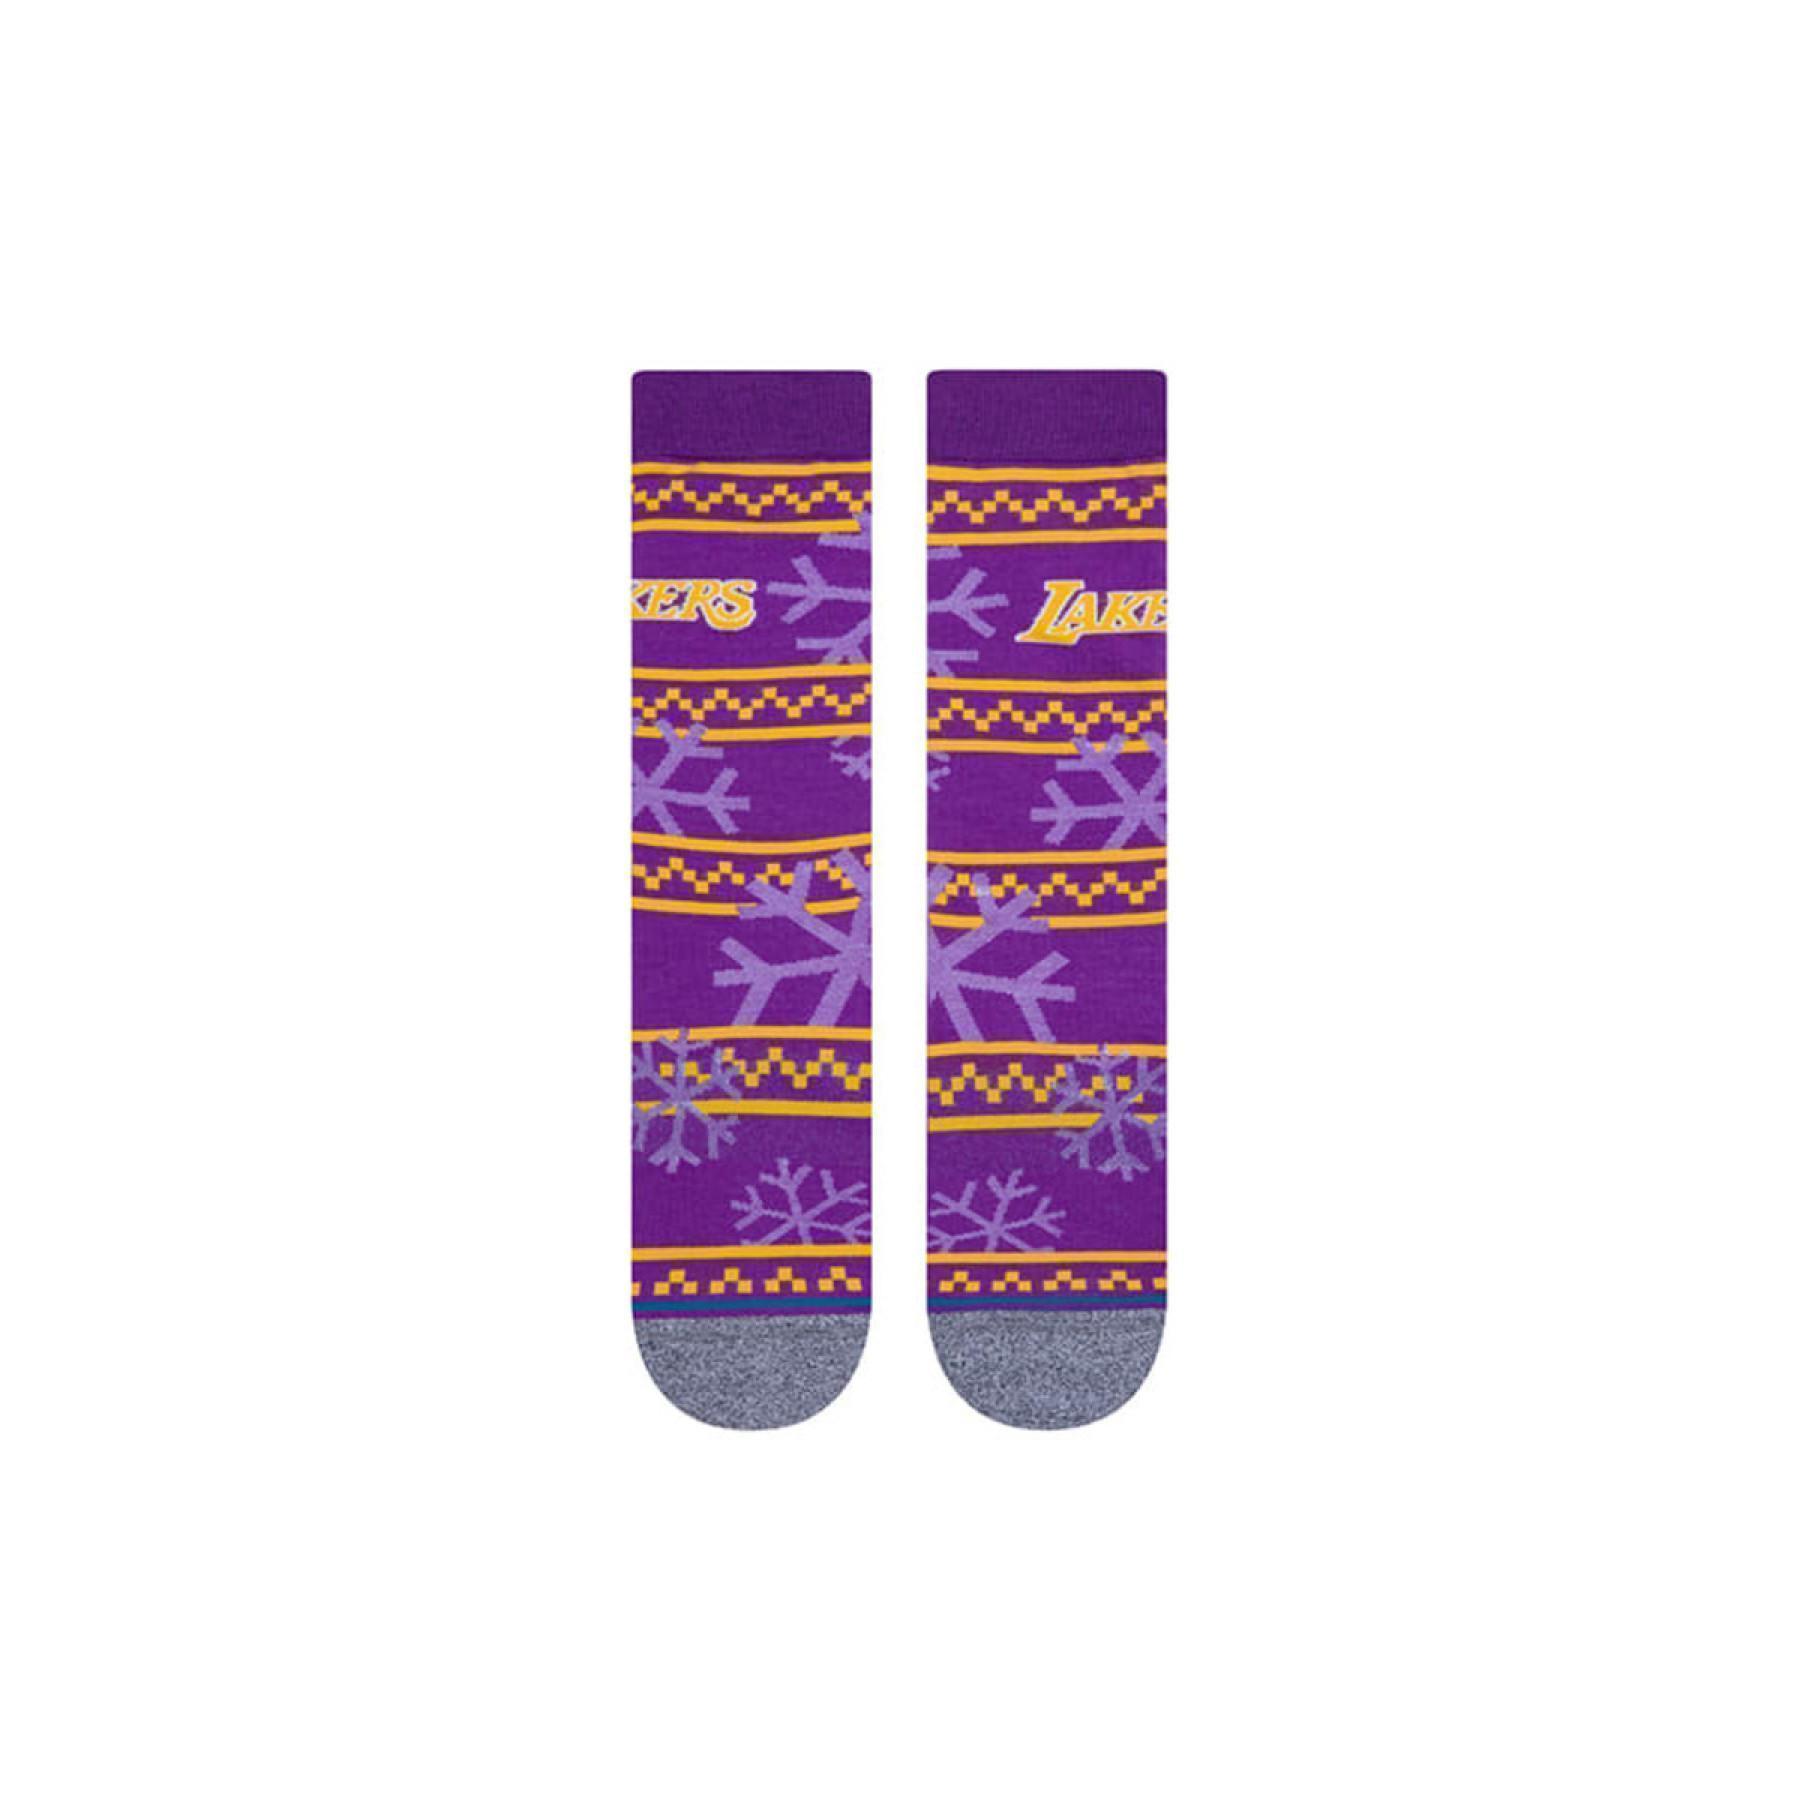 Socken Los Angeles Lakers